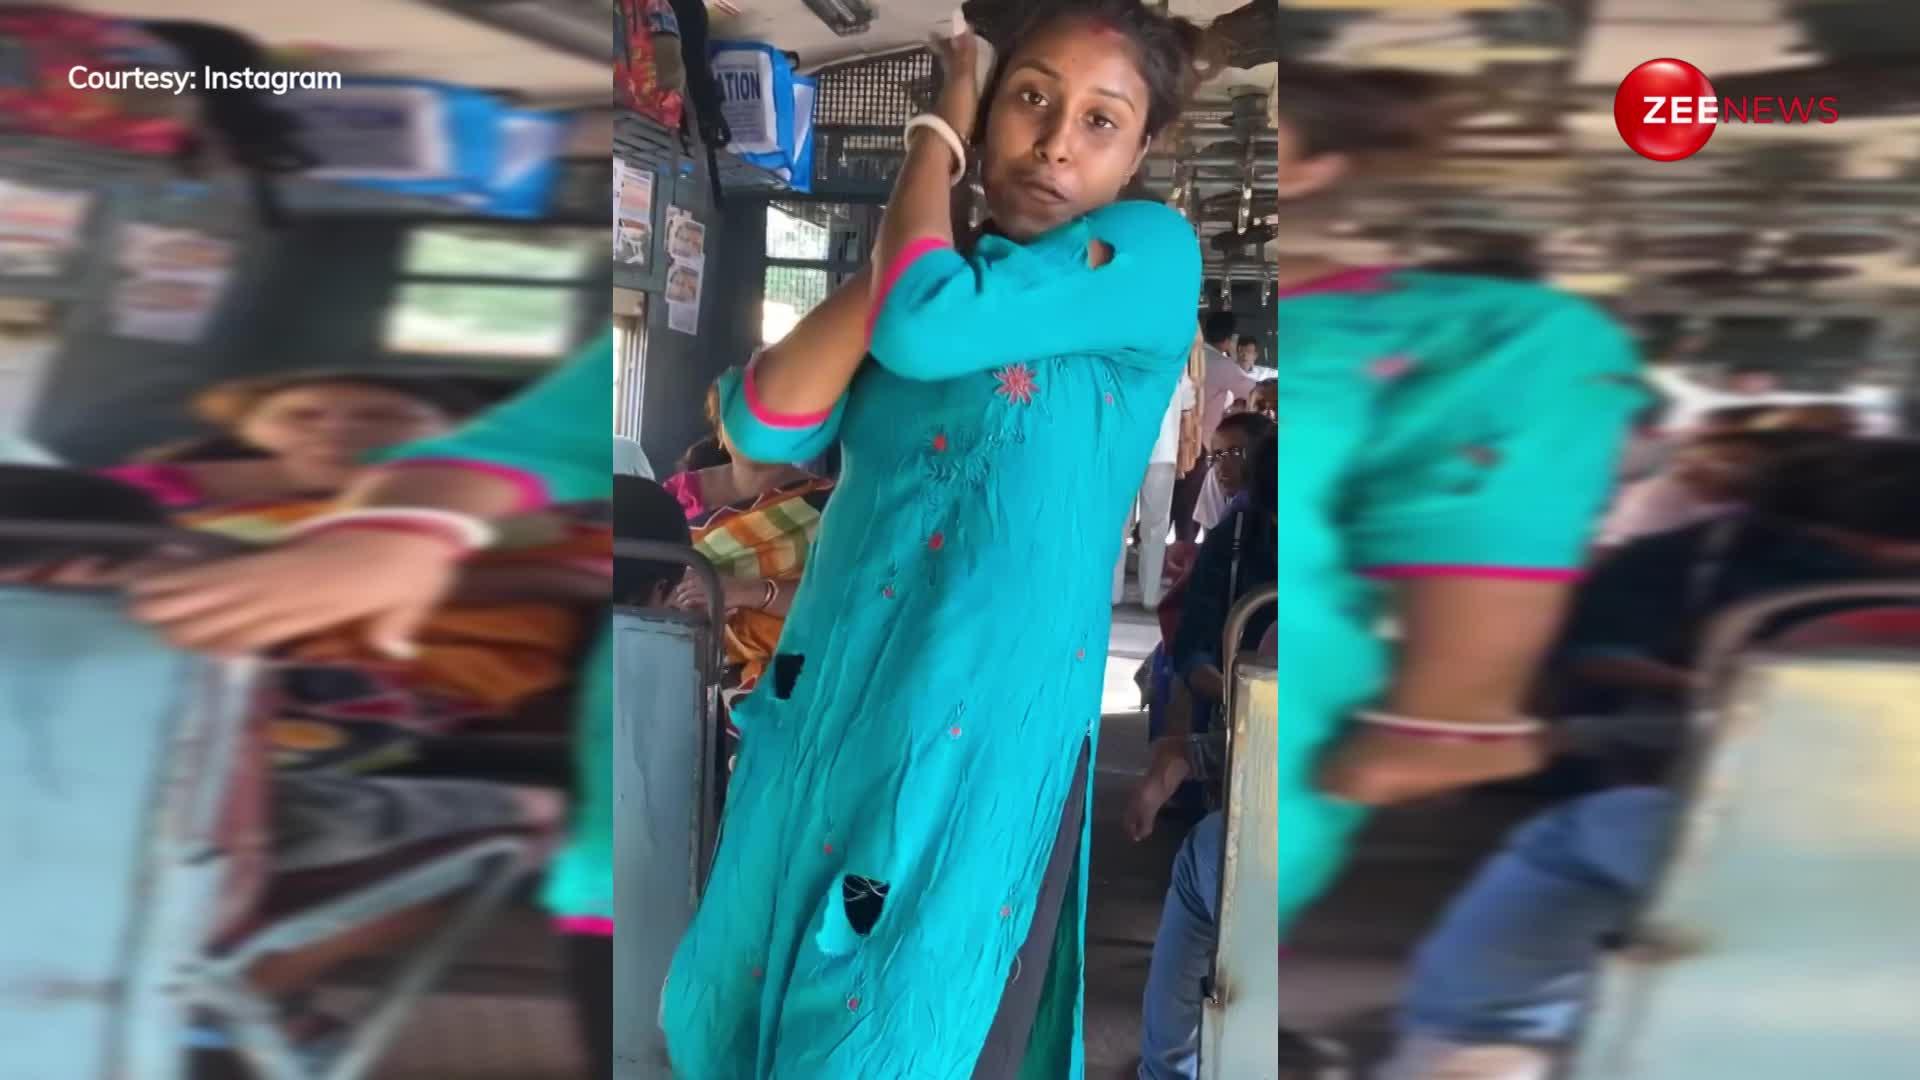 ट्रेन में फटे कपड़े पहन लड़की ने किया 'सात समंदर' पर डांस, लोग बोले- नेल एक्सटेंशन कराने के पैसे हैं लेकिन...